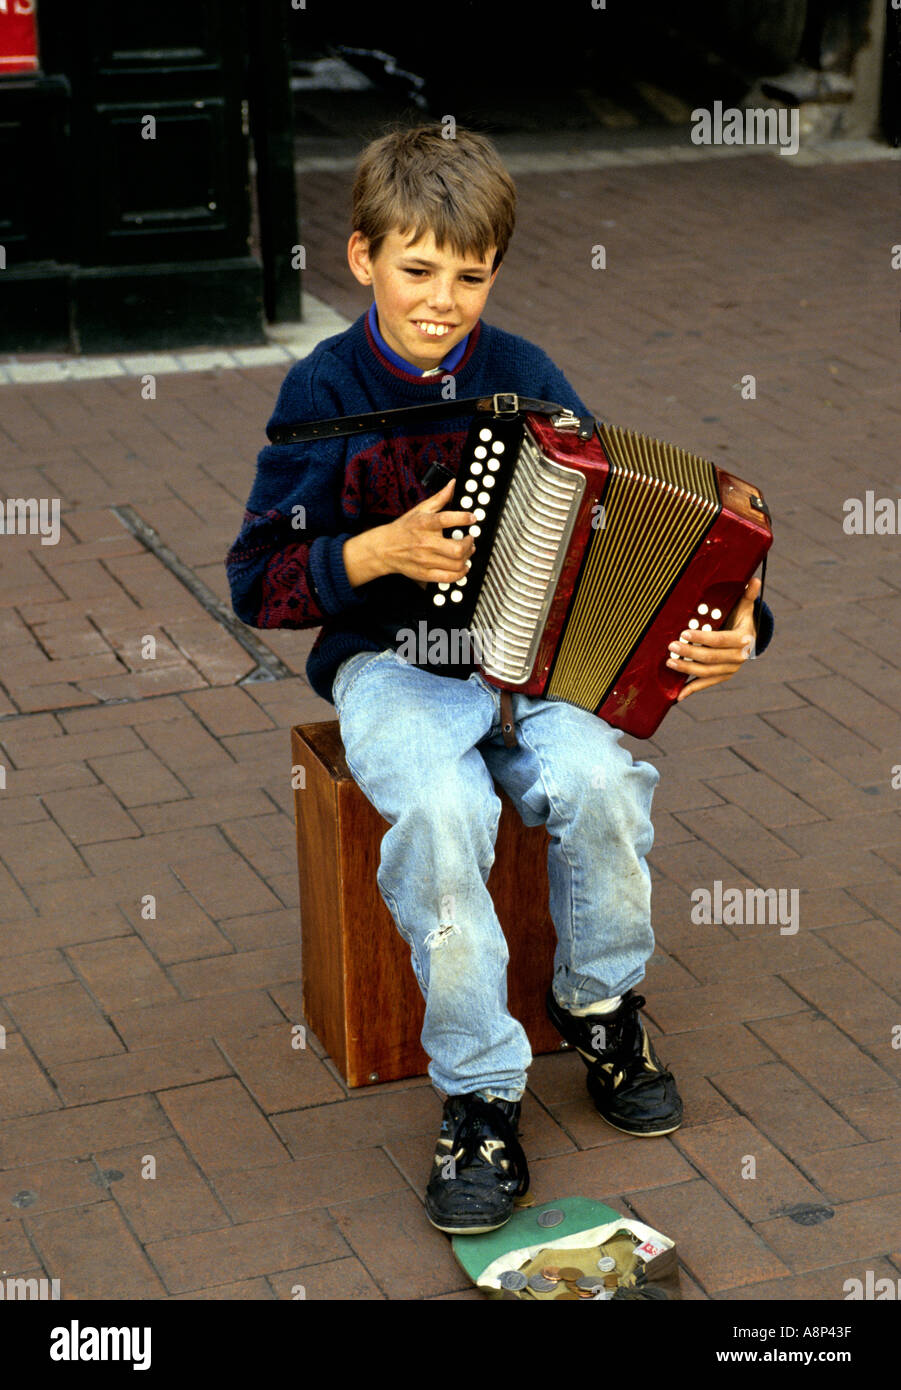 Un suonatore ambulante giovanile a Dublino' s Grafton Street Irlanda Foto Stock